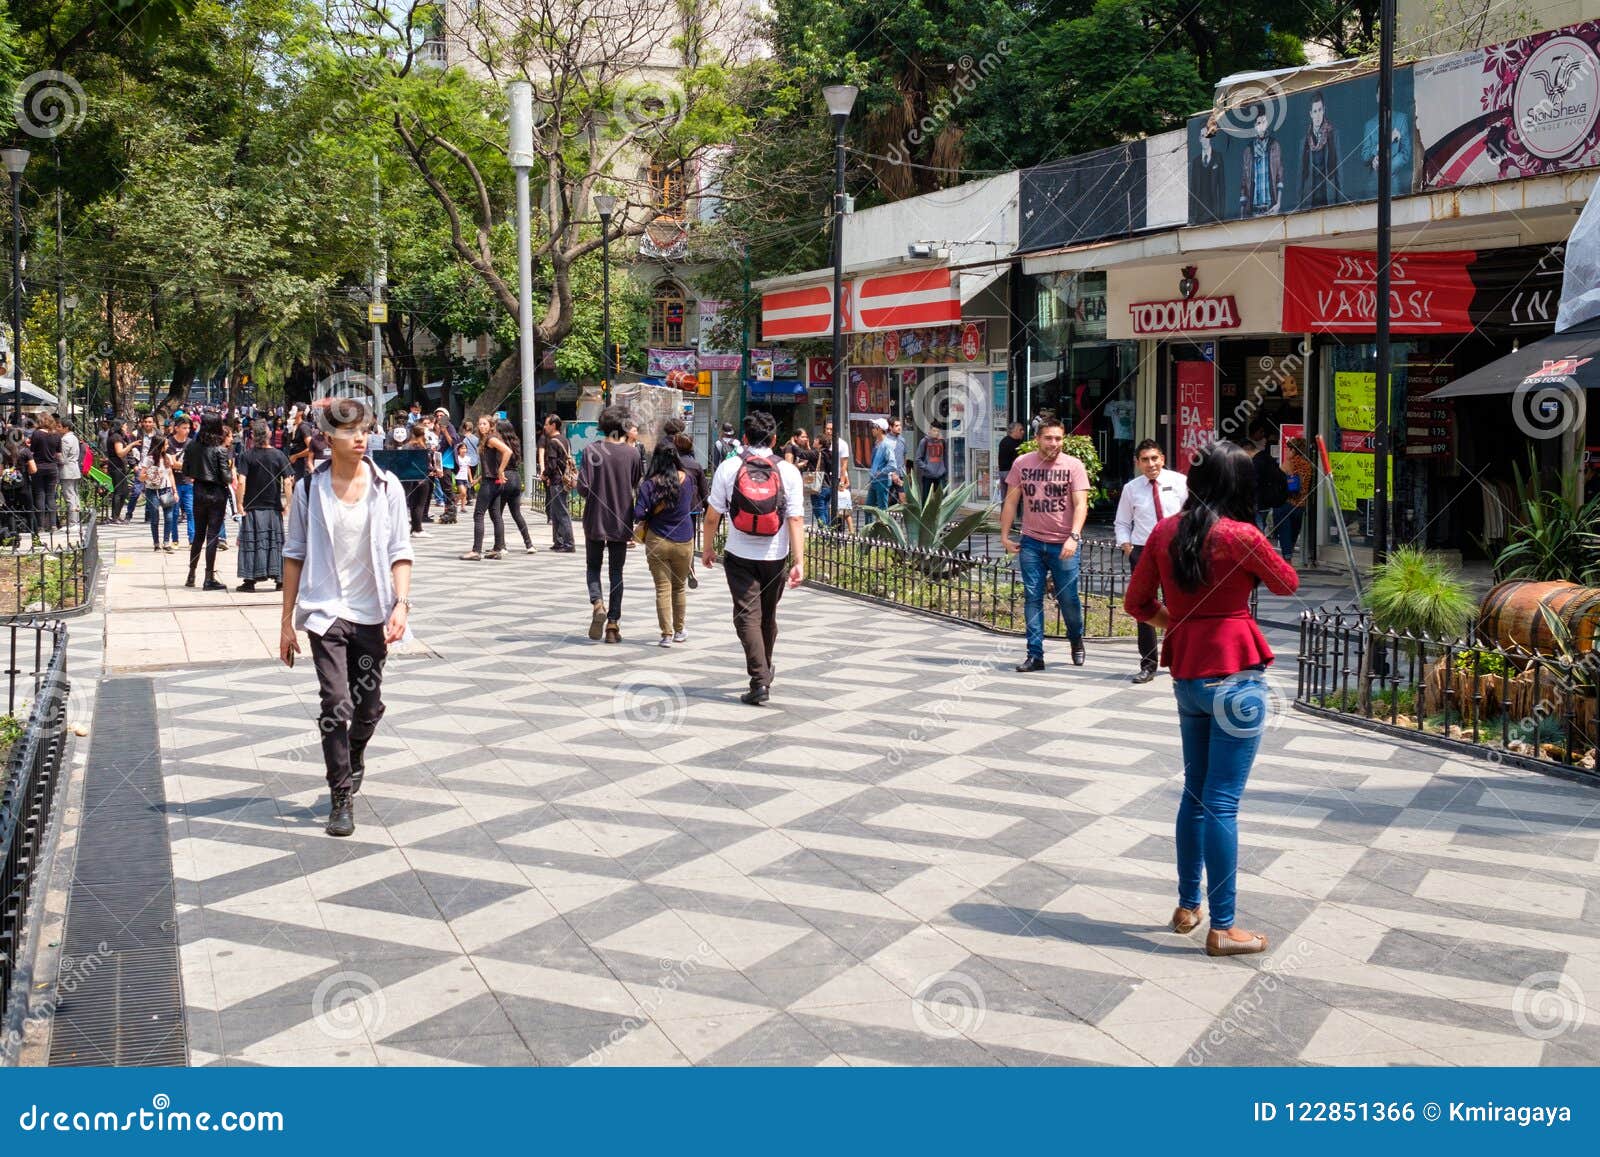 Zona Rosa, A Vibrant Cosmopolitan Neighborhood In Mexico City Editorial